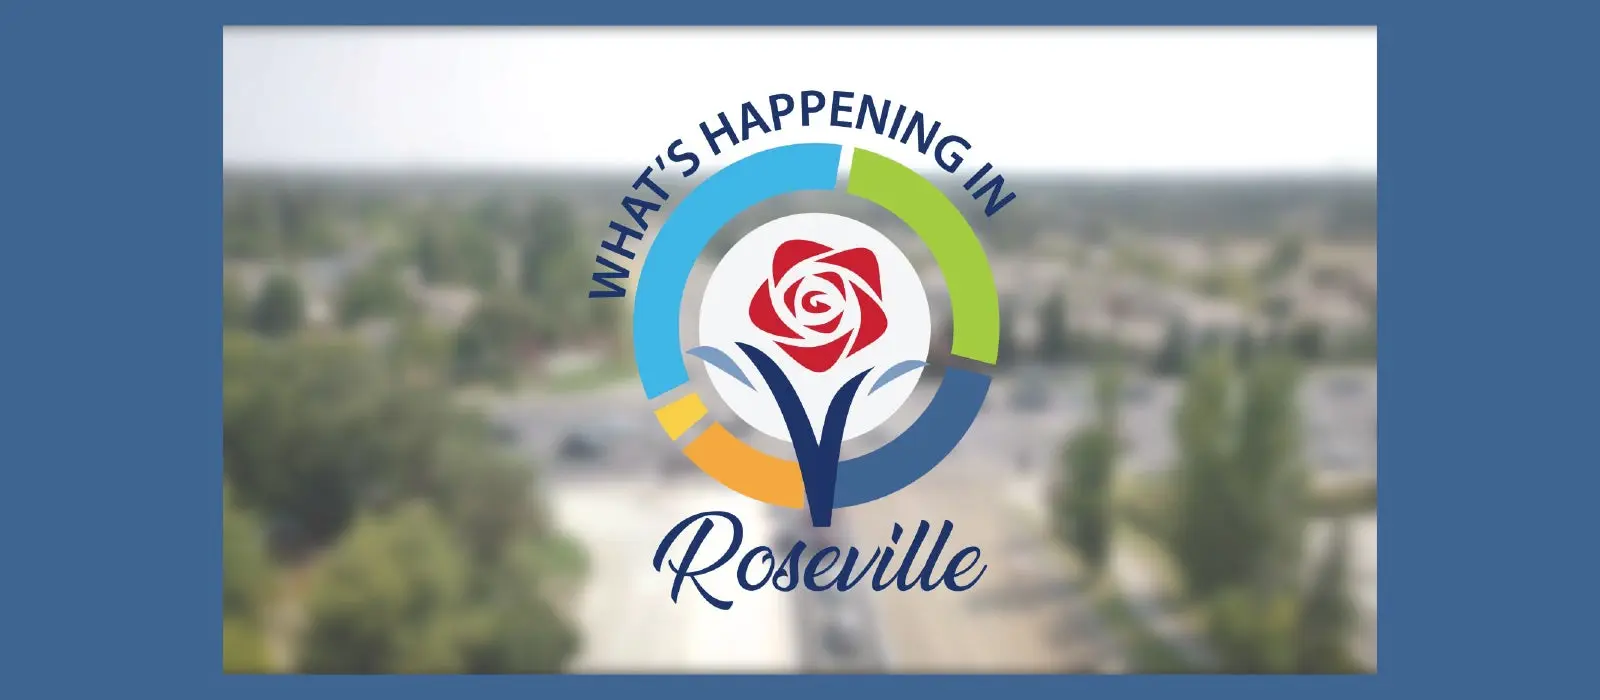 City of Roseville logo.